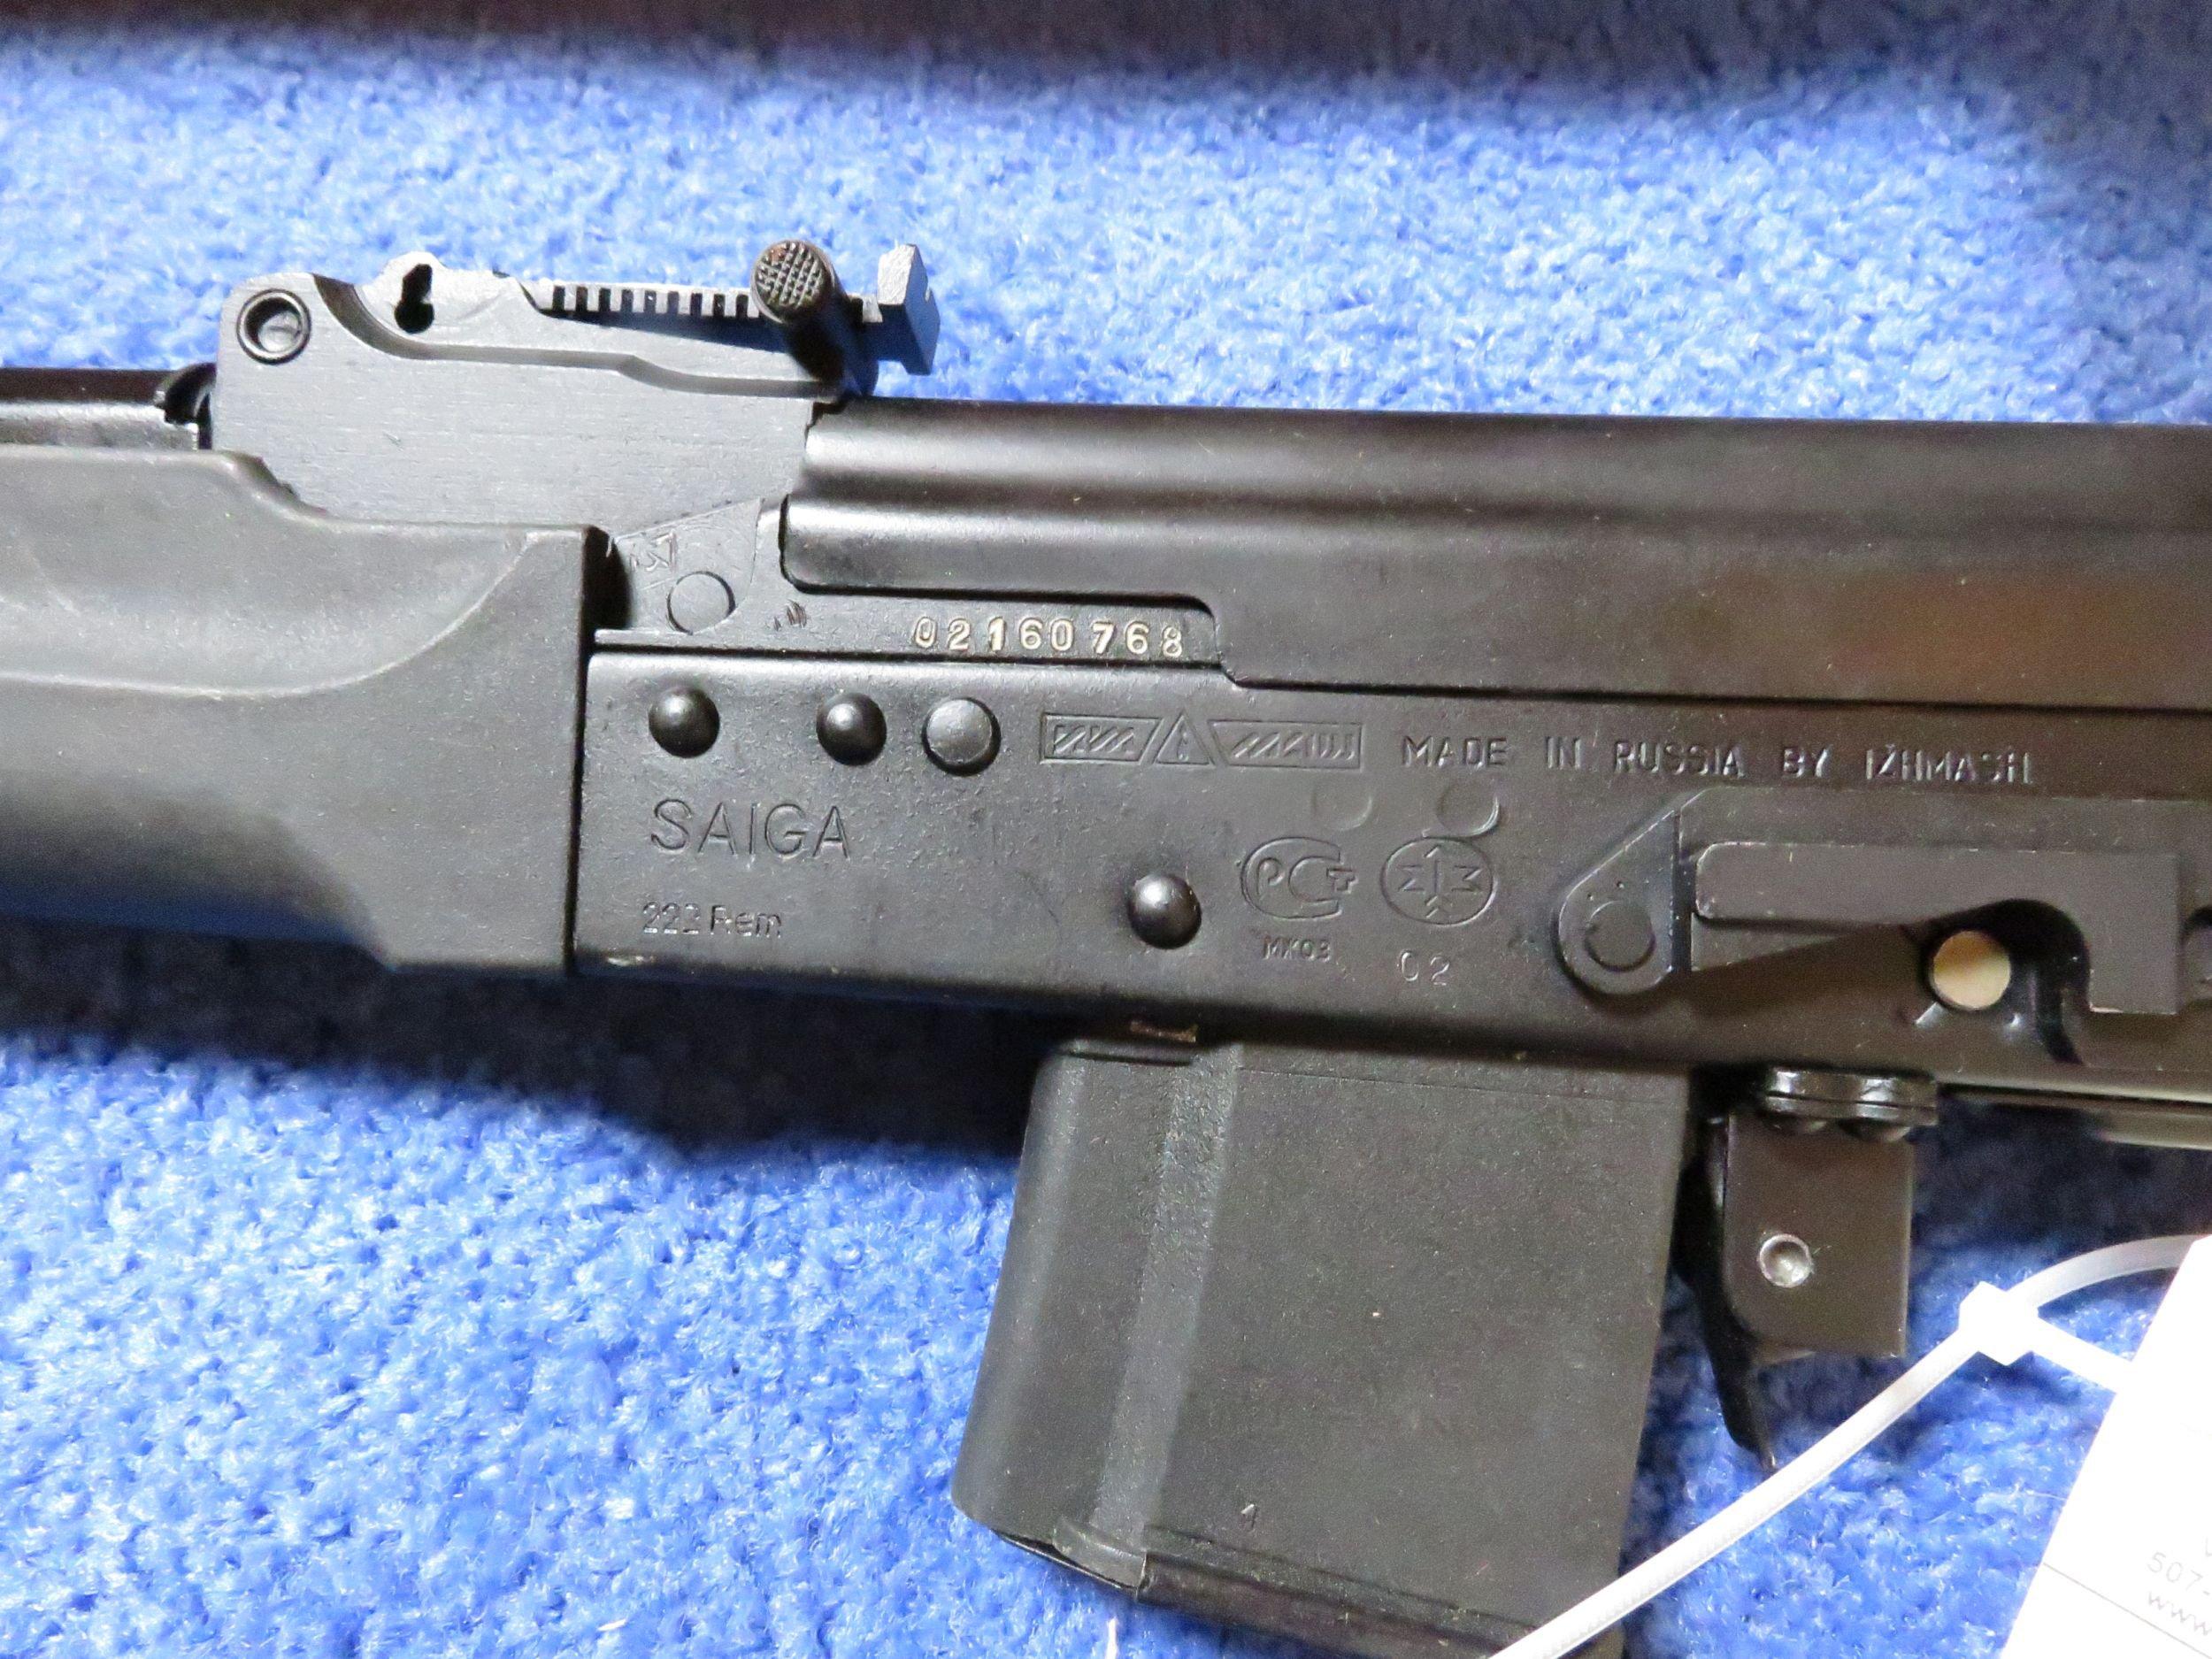 SAIGA .308 Semi-Auto Rifle